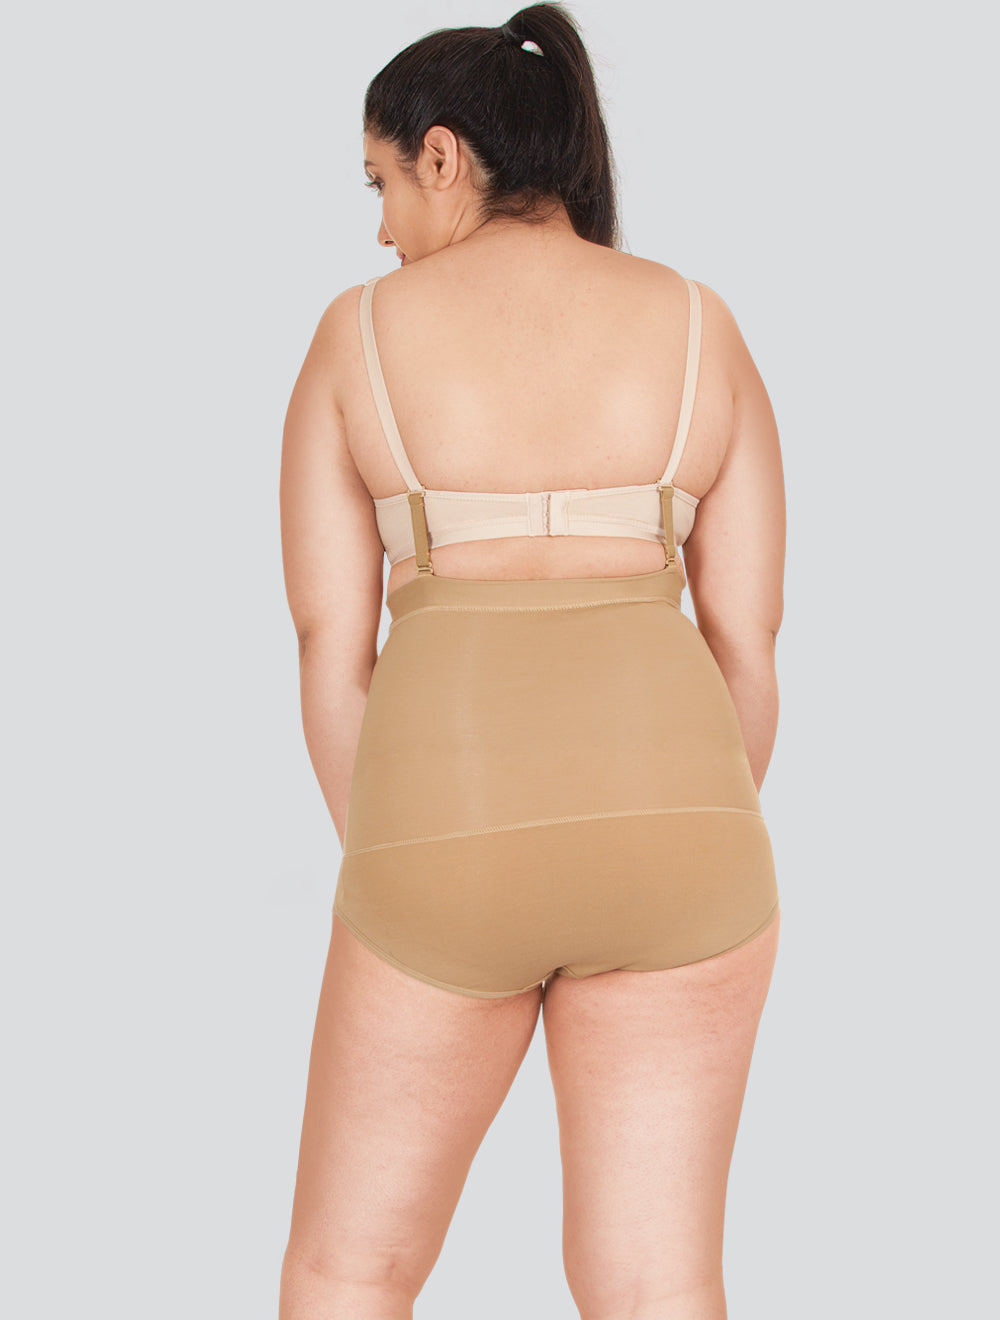 Herrnalise Plus Size Corset Shapewear Women's Body Shaping Clothing  Postpartum Waist Tightening Binding Body Tightening Slim Top Tightening  Belly